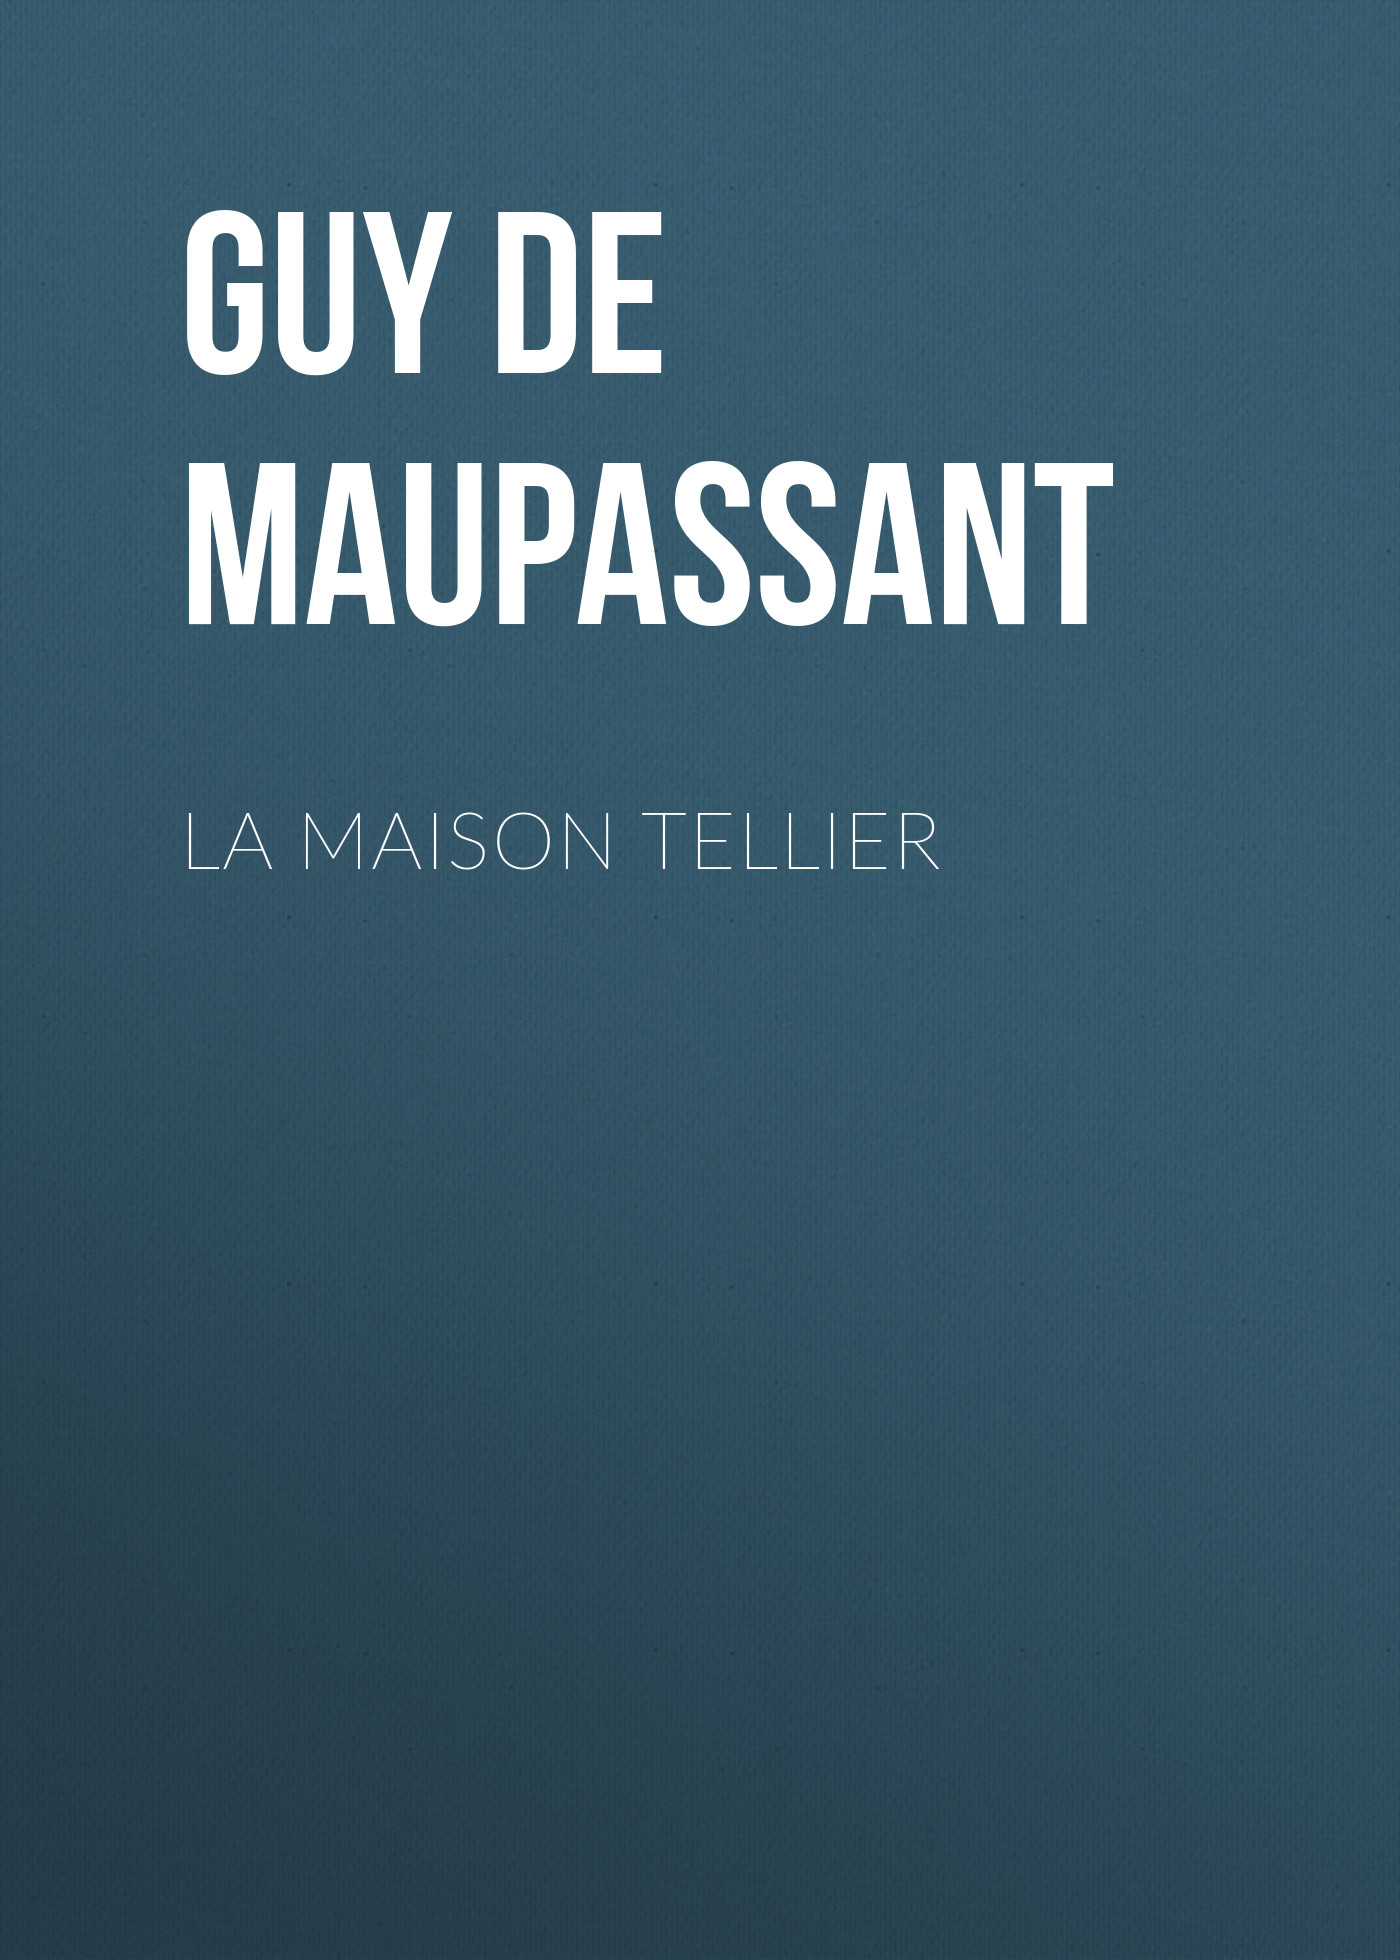 Книга La Maison Tellier из серии , созданная Guy Maupassant, может относится к жанру Литература 19 века, Зарубежная старинная литература, Зарубежная классика. Стоимость электронной книги La Maison Tellier с идентификатором 25292755 составляет 0 руб.